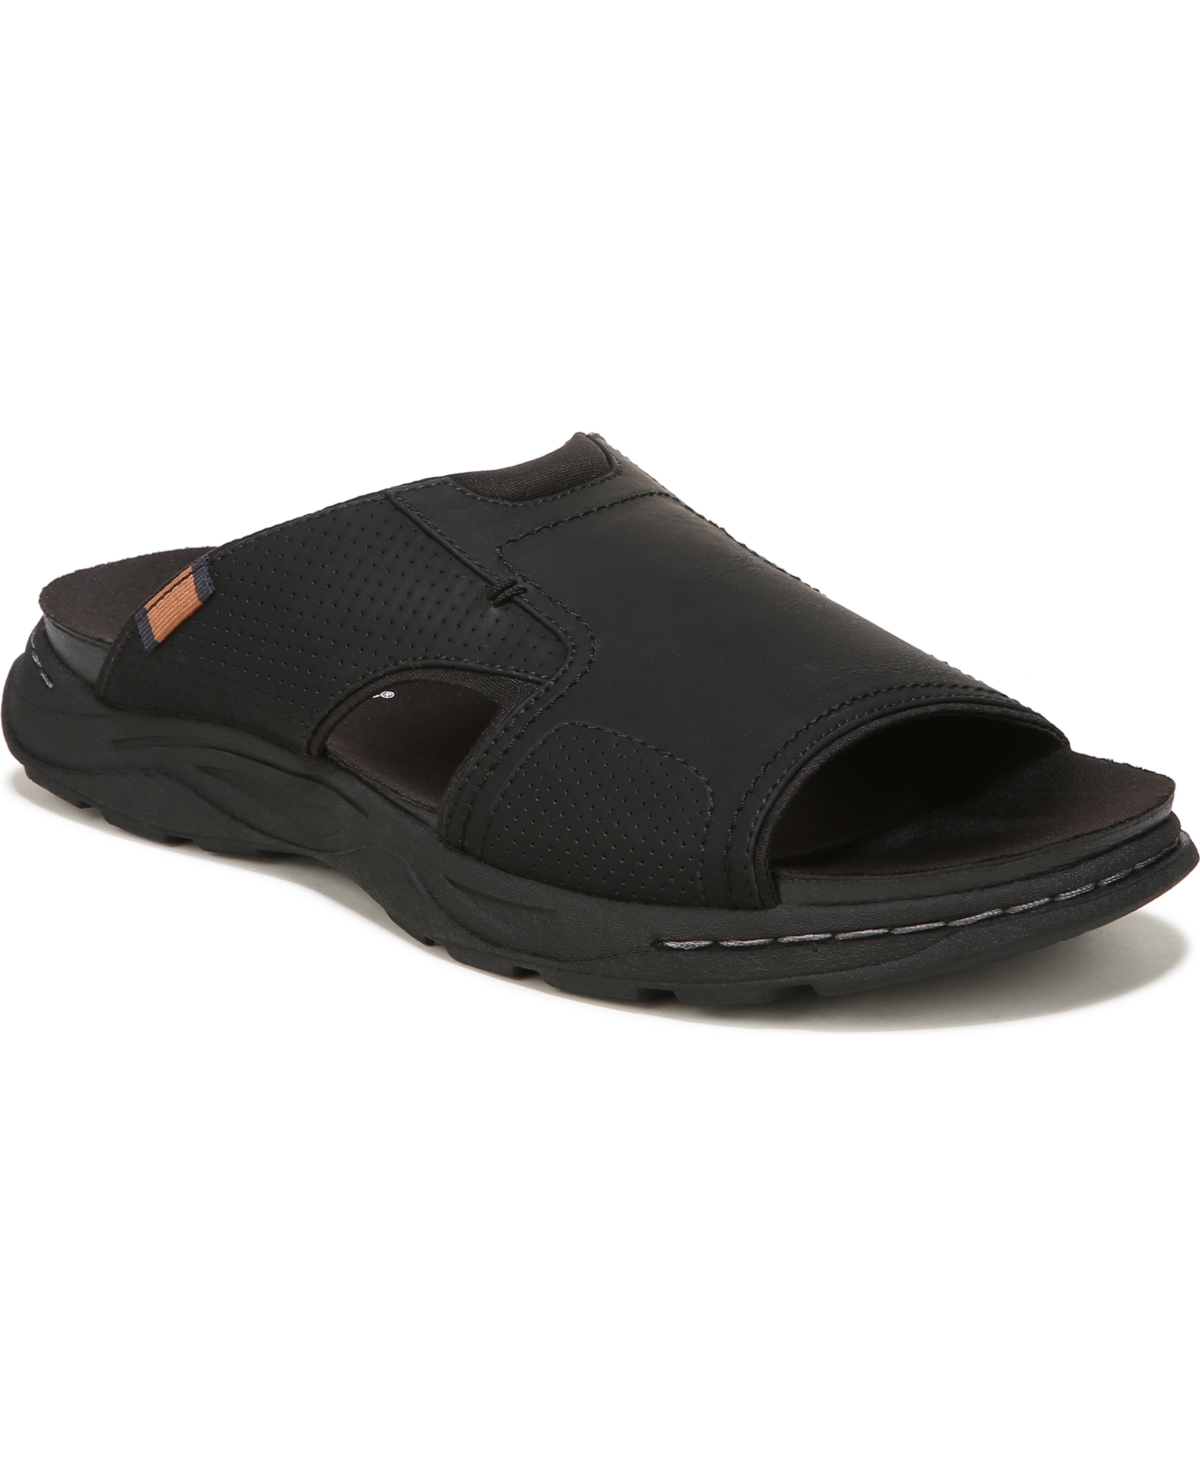 Men's Hawthorne Slip-on Slides Sandals - Black